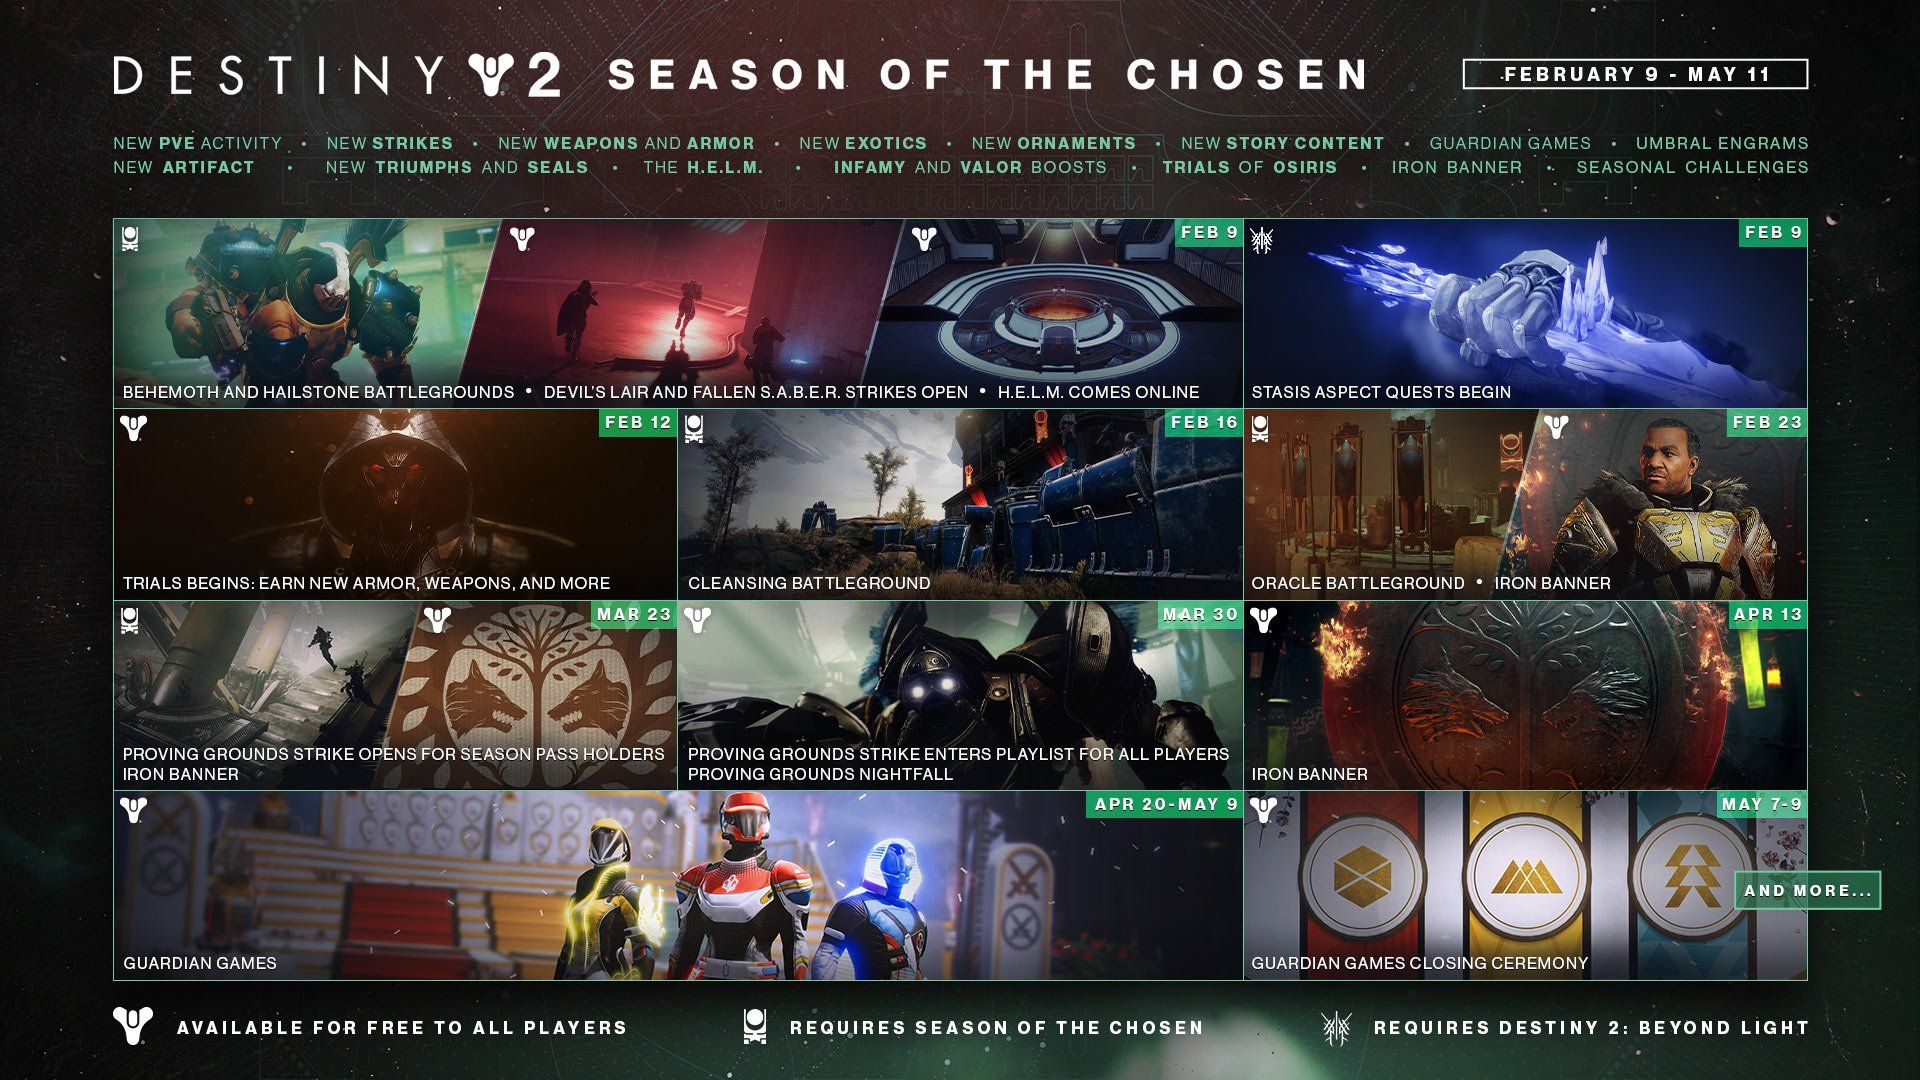 Season of the Chosen in Destiny 2 - Roadmap